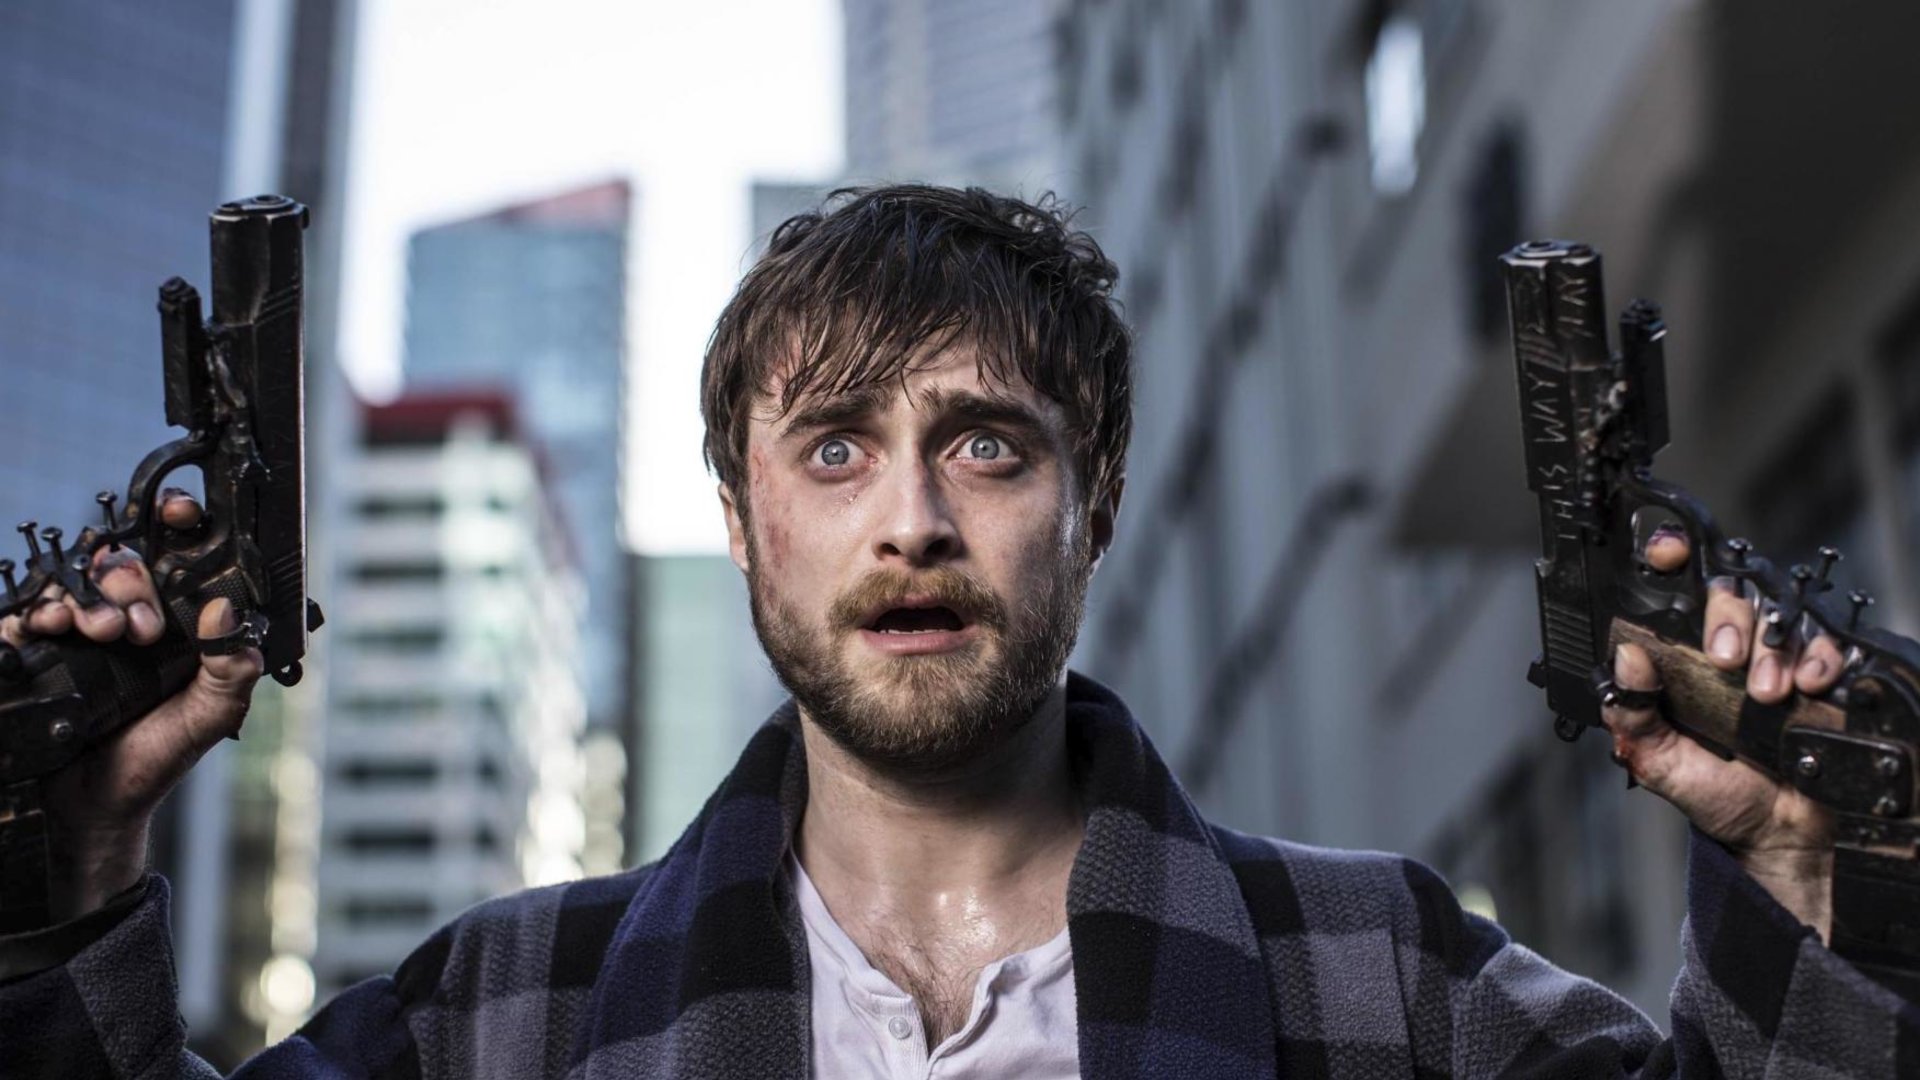 #Mit Perücke und Bart: So verrückt hat man „Harry Potter“-Star Daniel Radcliffe noch nie gesehen